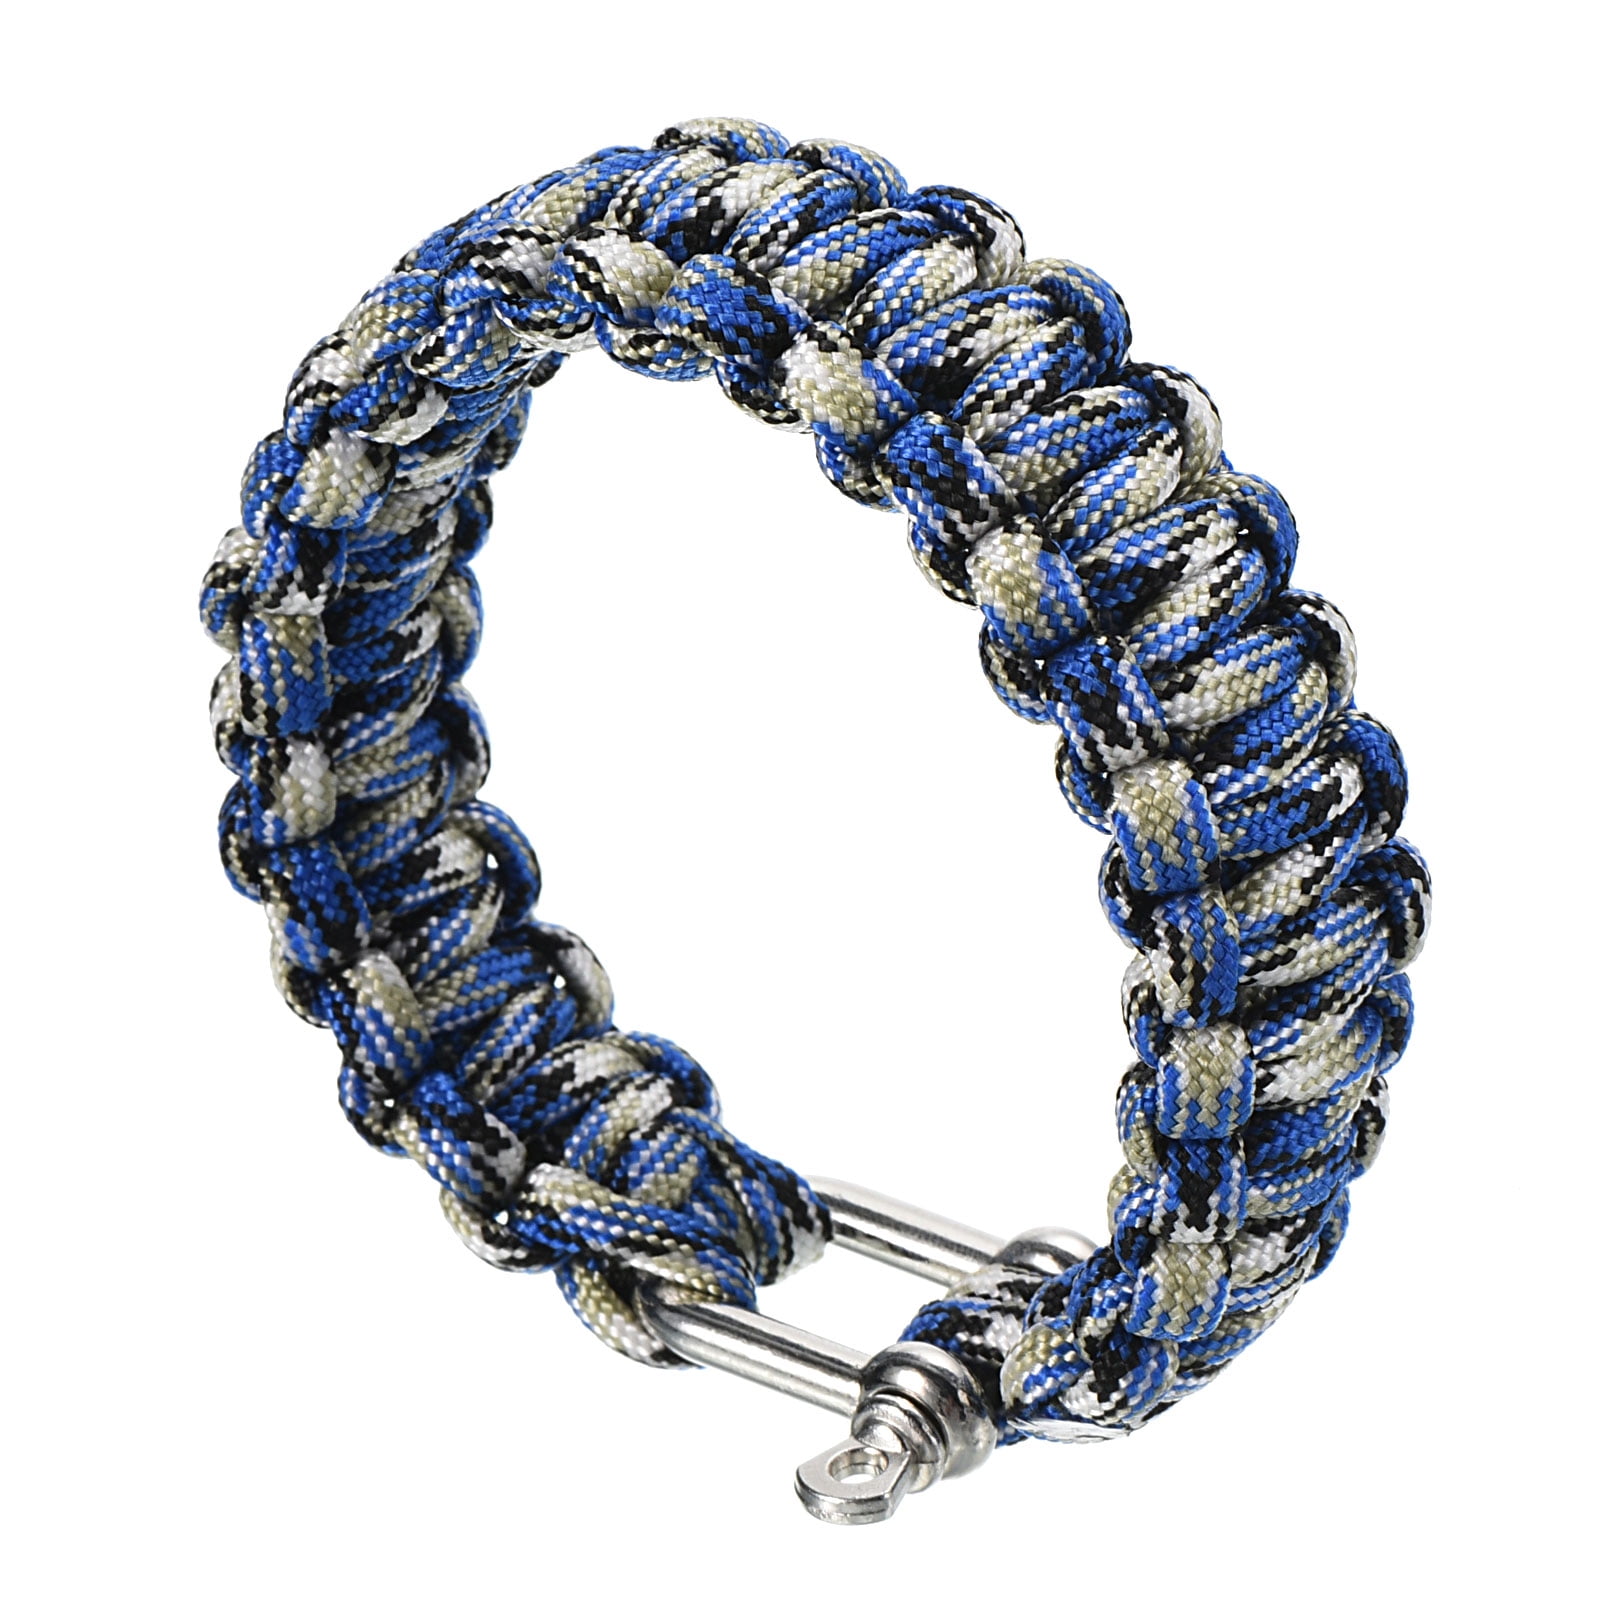 Uxcell Survival Paracord Bracelets, Braided Parachute Bracelet, Blue,  Black, White